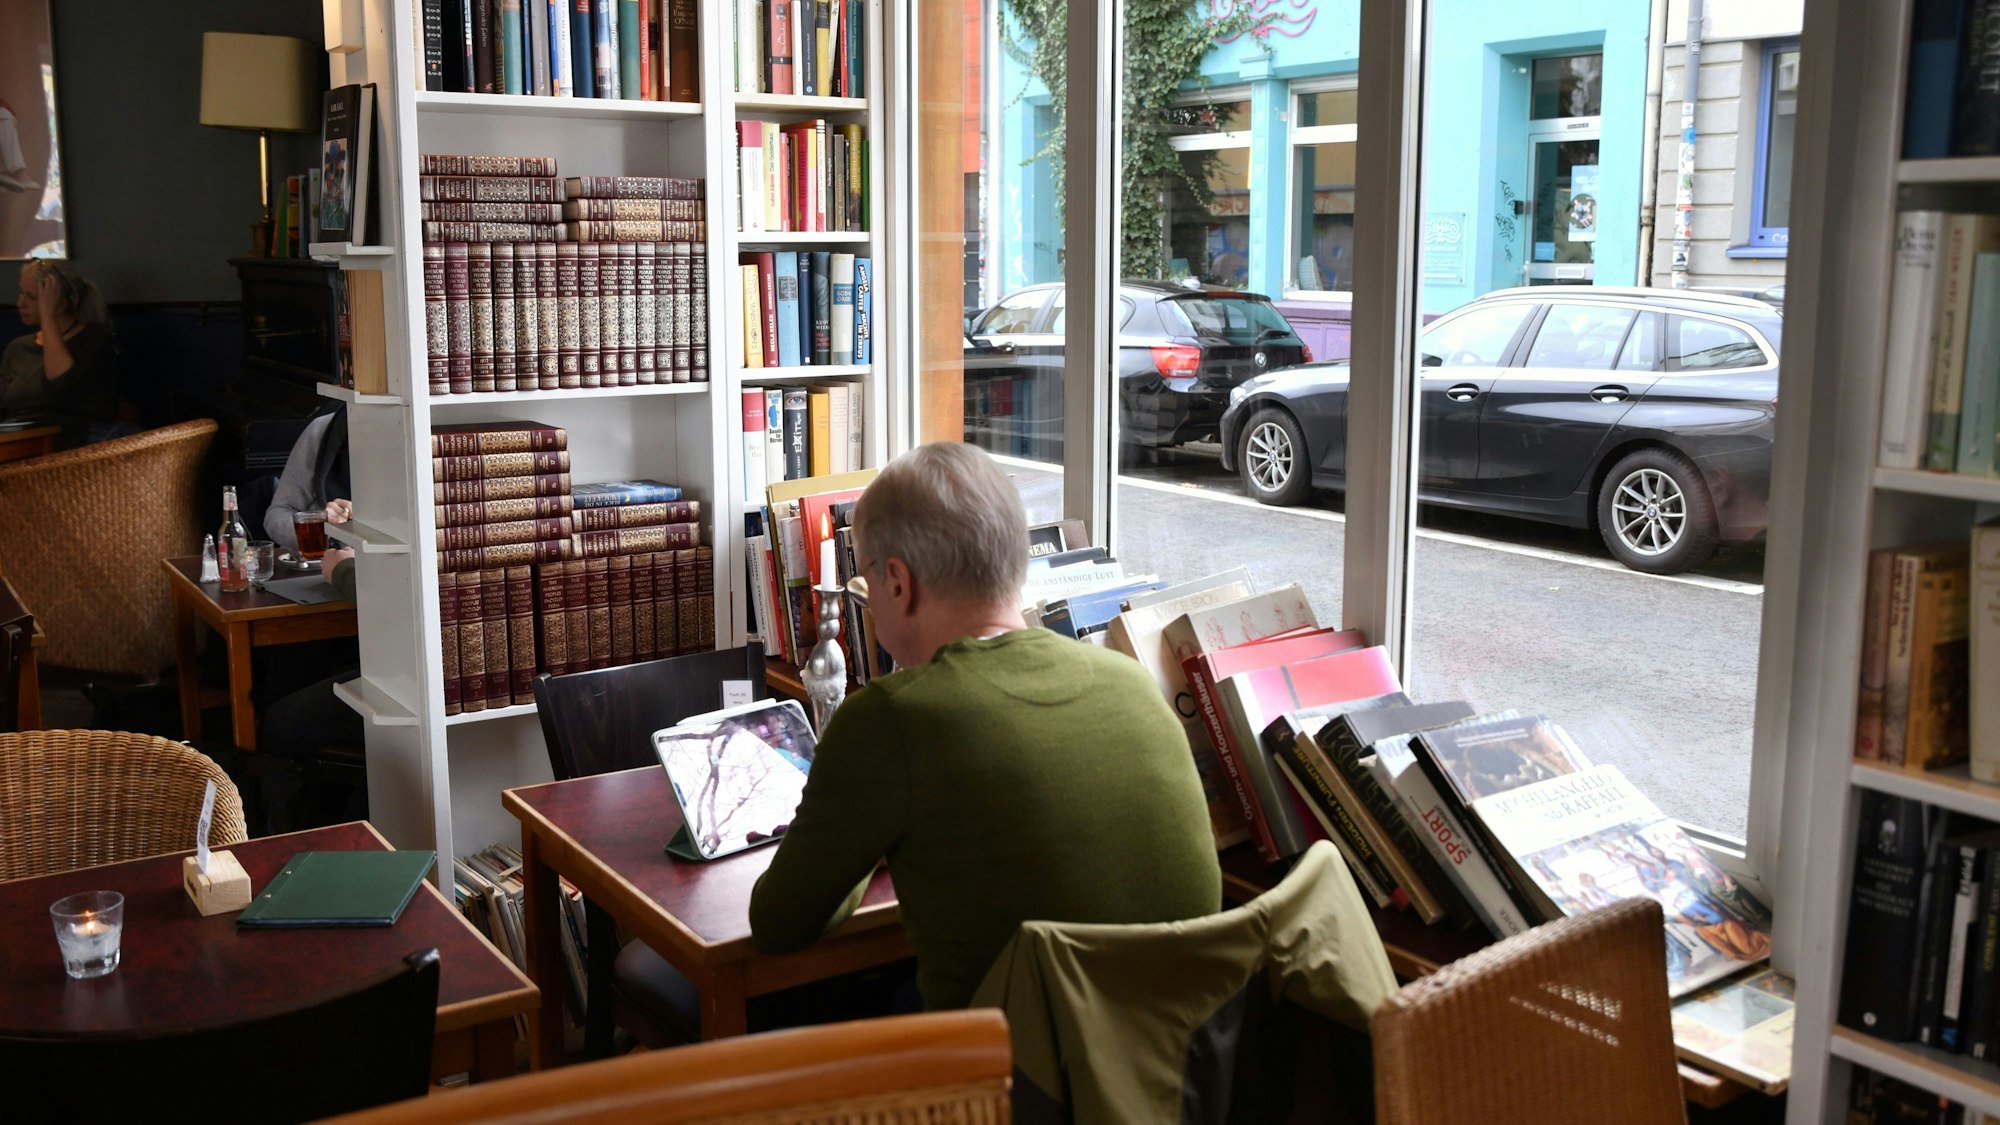 Lesestunden im Café sind Balsam für die Seele. Im Bild, das Café Goldmund in Ehrenfeld.